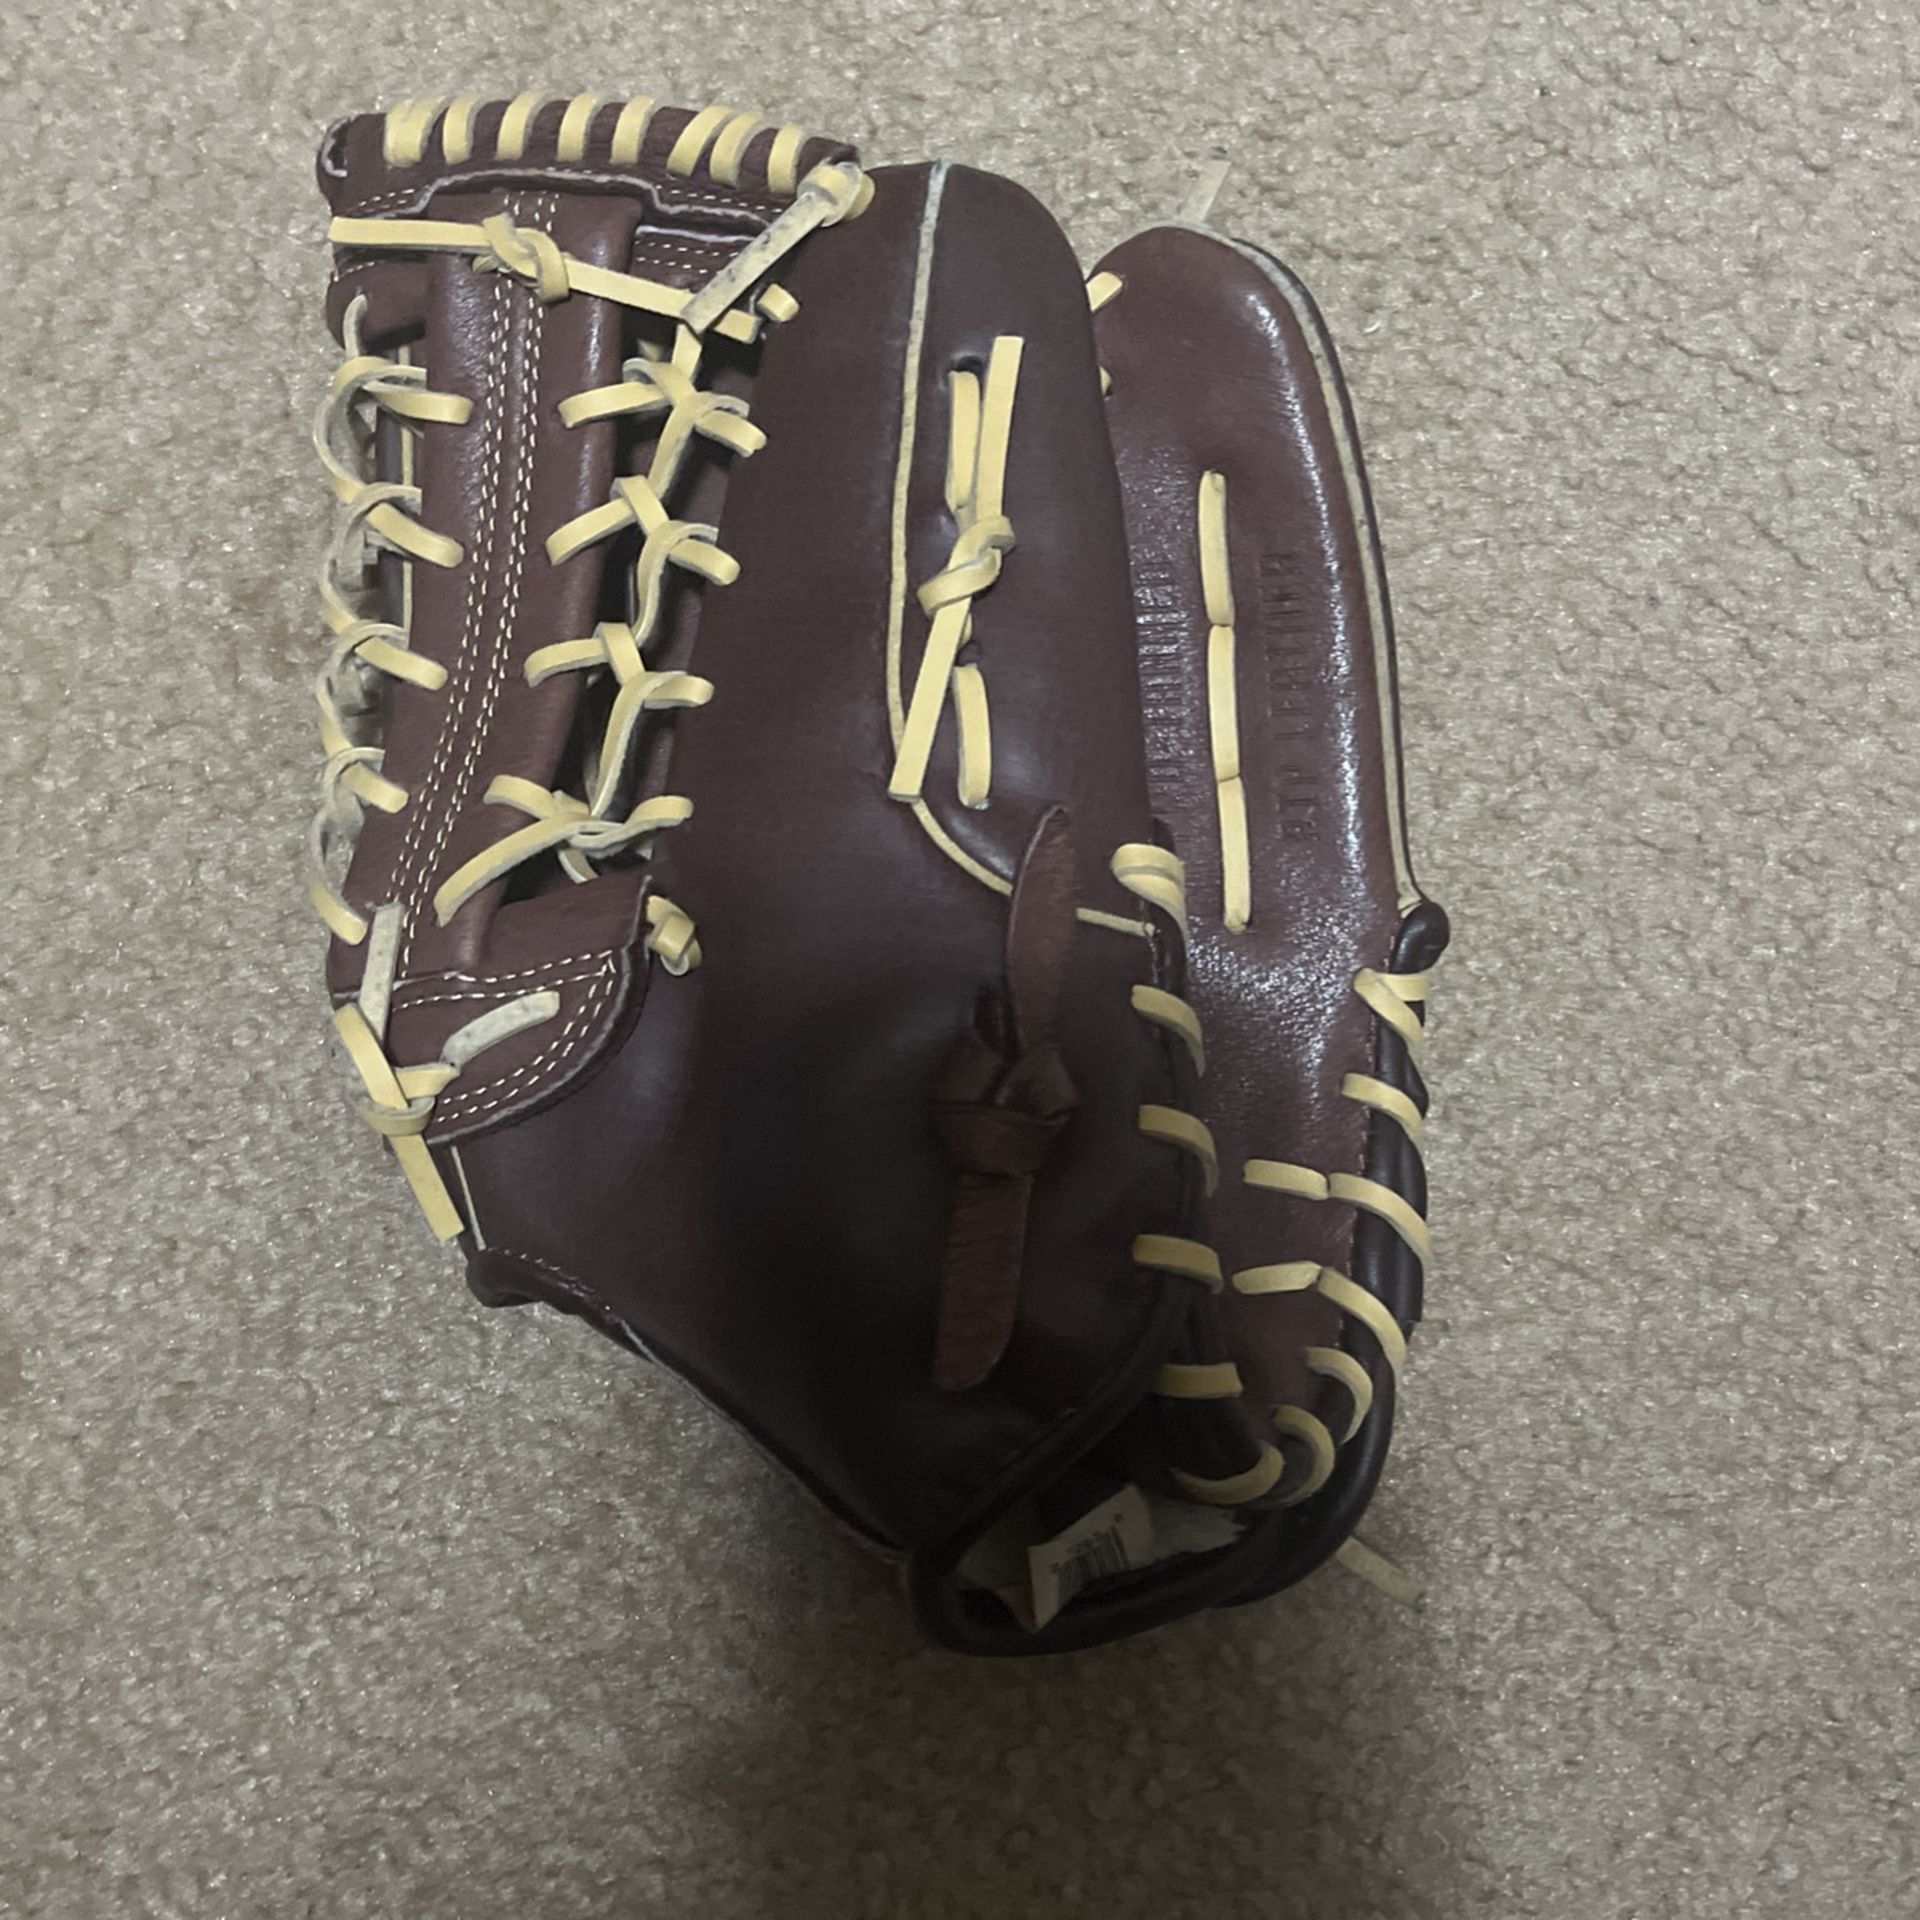 Franklin Baseball Glove 